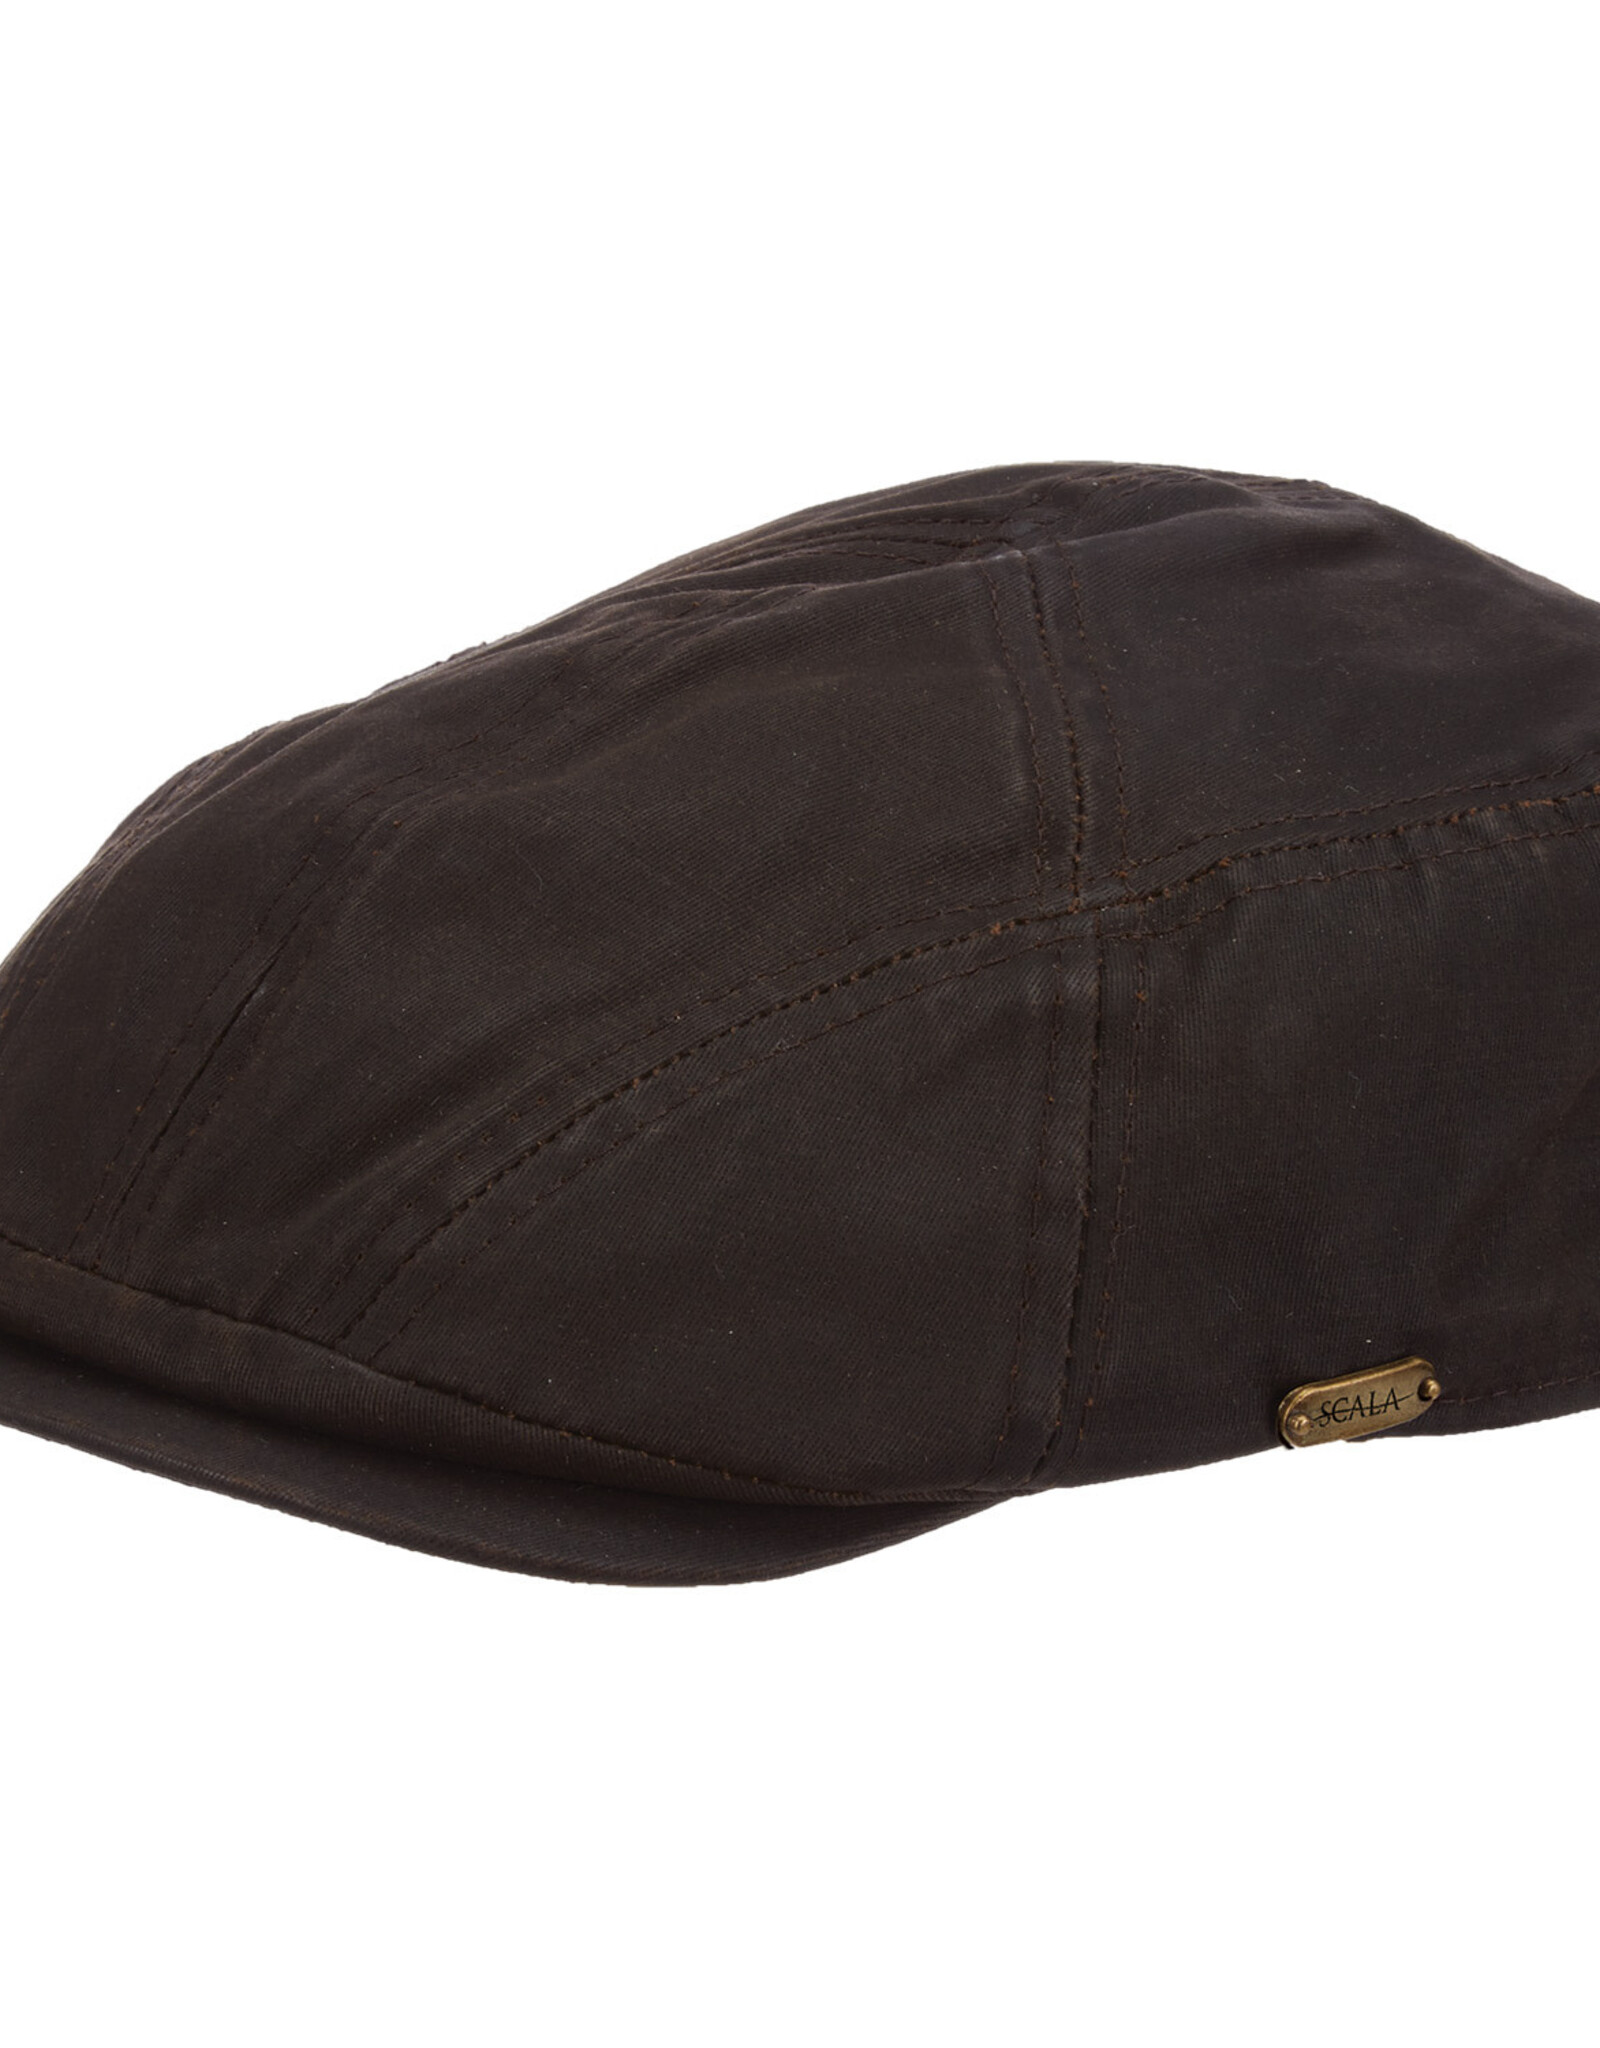 HAT-IVY CAP "CARDIFF"